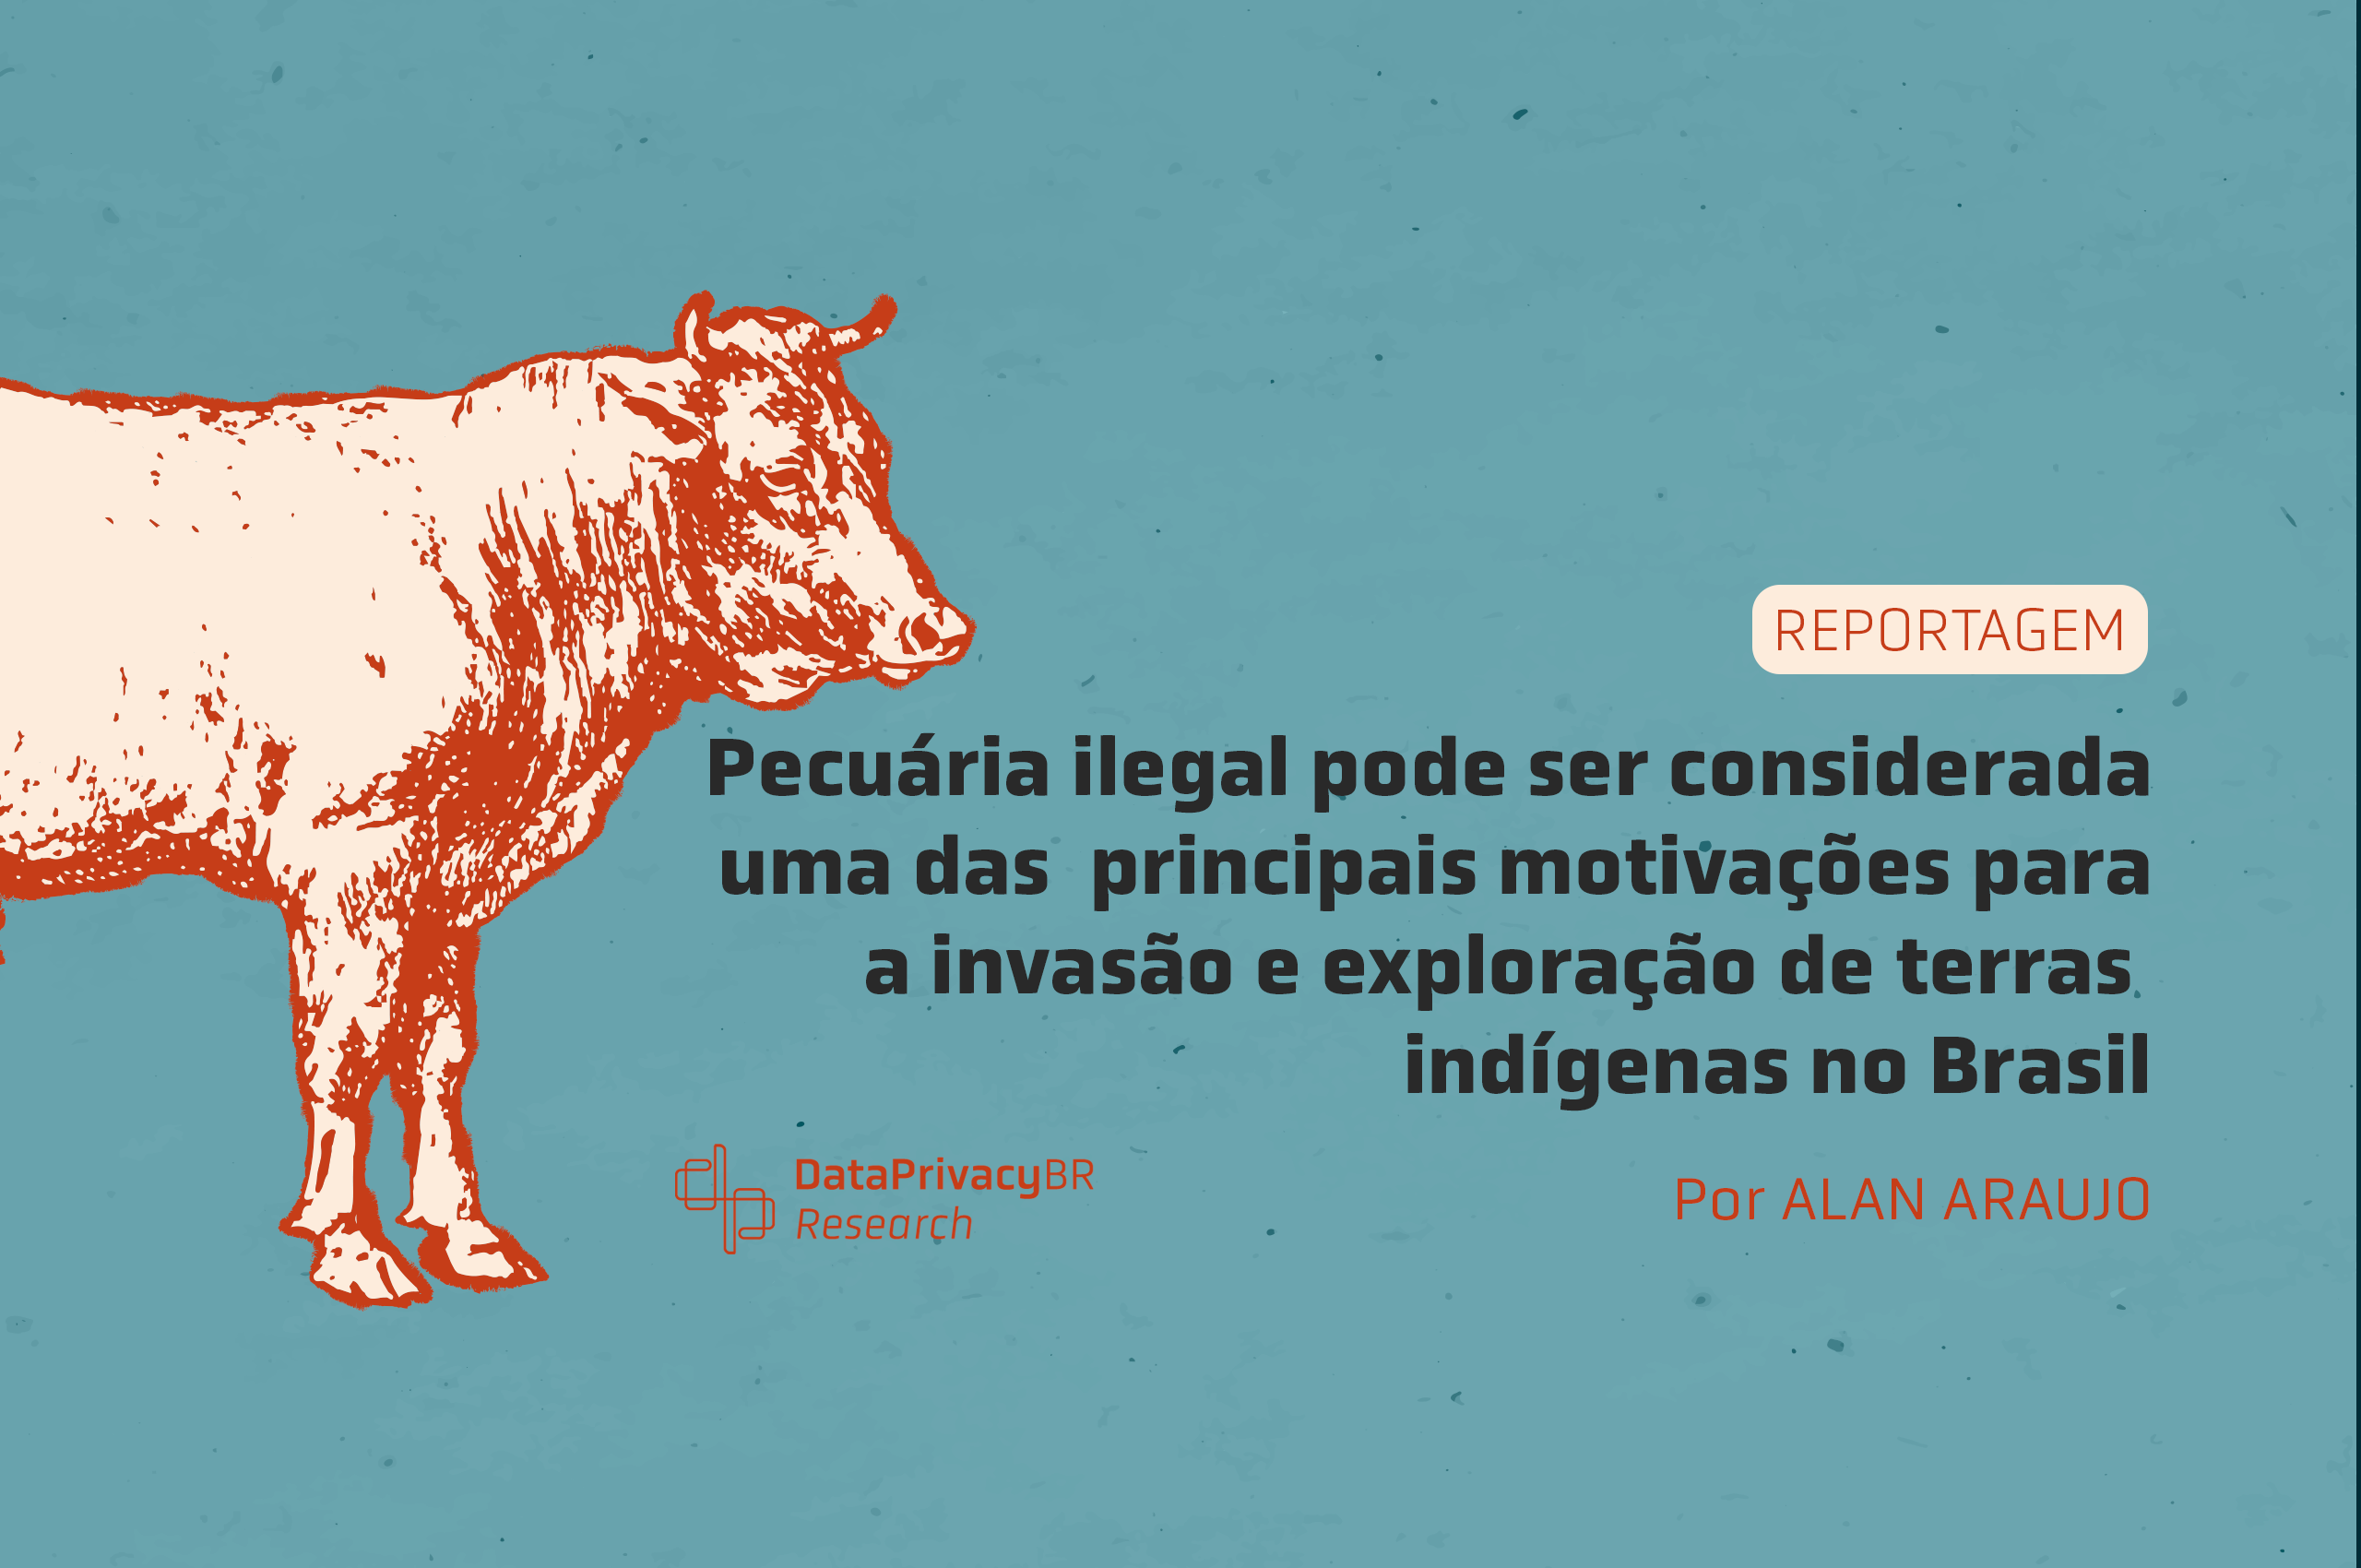  Reportagem completa – Pecuária ilegal pode ser considerada uma das principais motivações para invasão e exploração de terras indígenas no Brasil